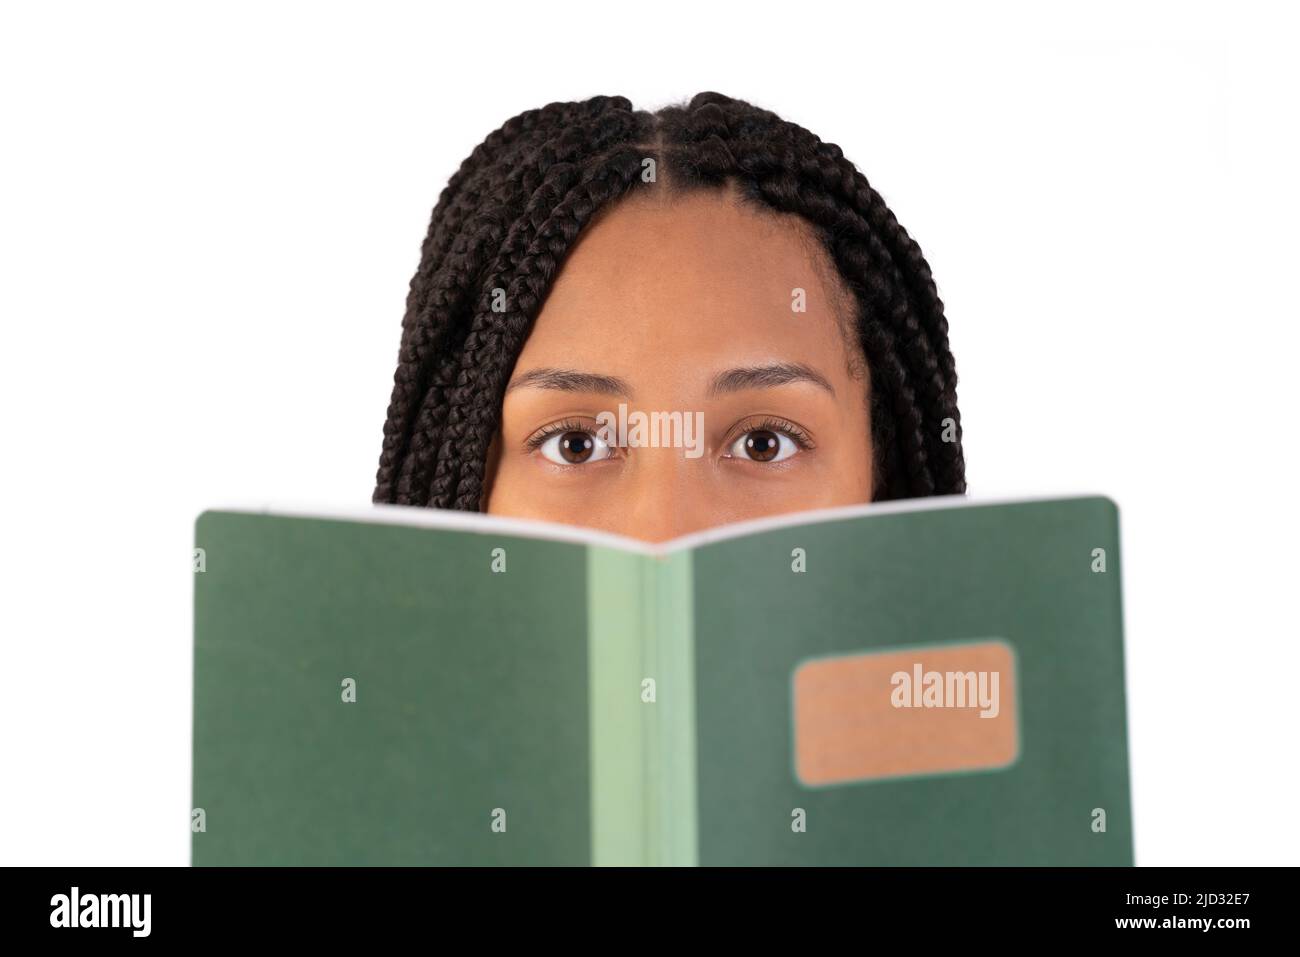 Jeune femme noire lisant un ordinateur portable et regardant un appareil photo Banque D'Images